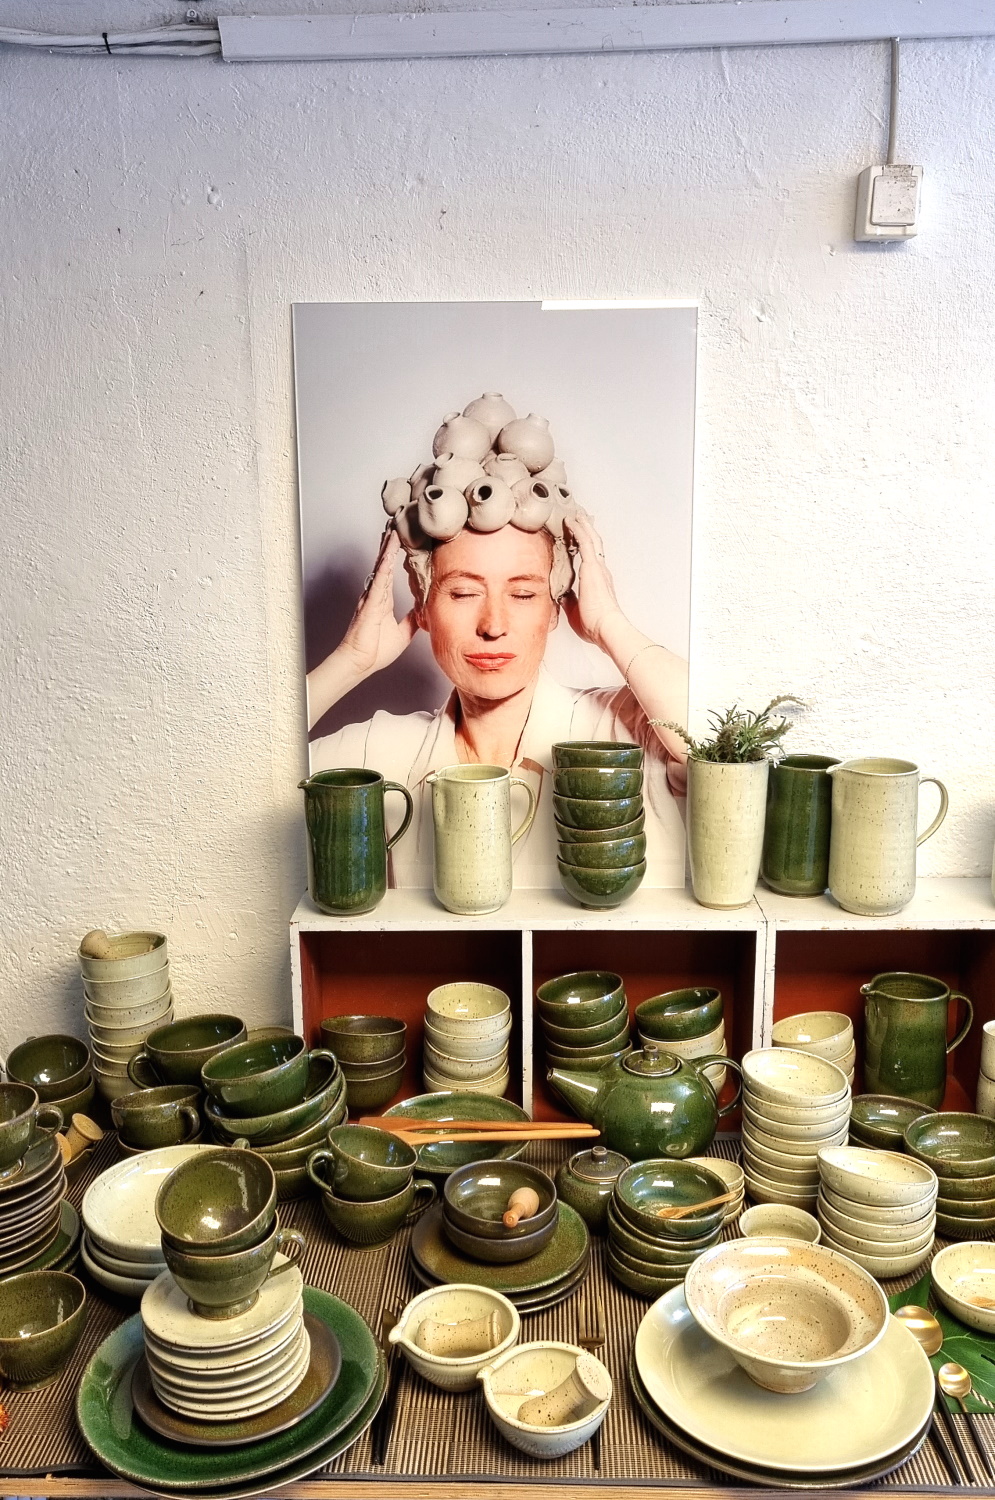 Manufakturen-Blog: Im Atelier-Verkauf bei Franziska M. Köllner in Leipzig mit Keramik-Geschirr im 'Vietnam-Köllner'-Grün - im Hintergrund ein Foto, das ihre Tochter von ihr gemacht hat. (Foto: Wigmar Bressel)